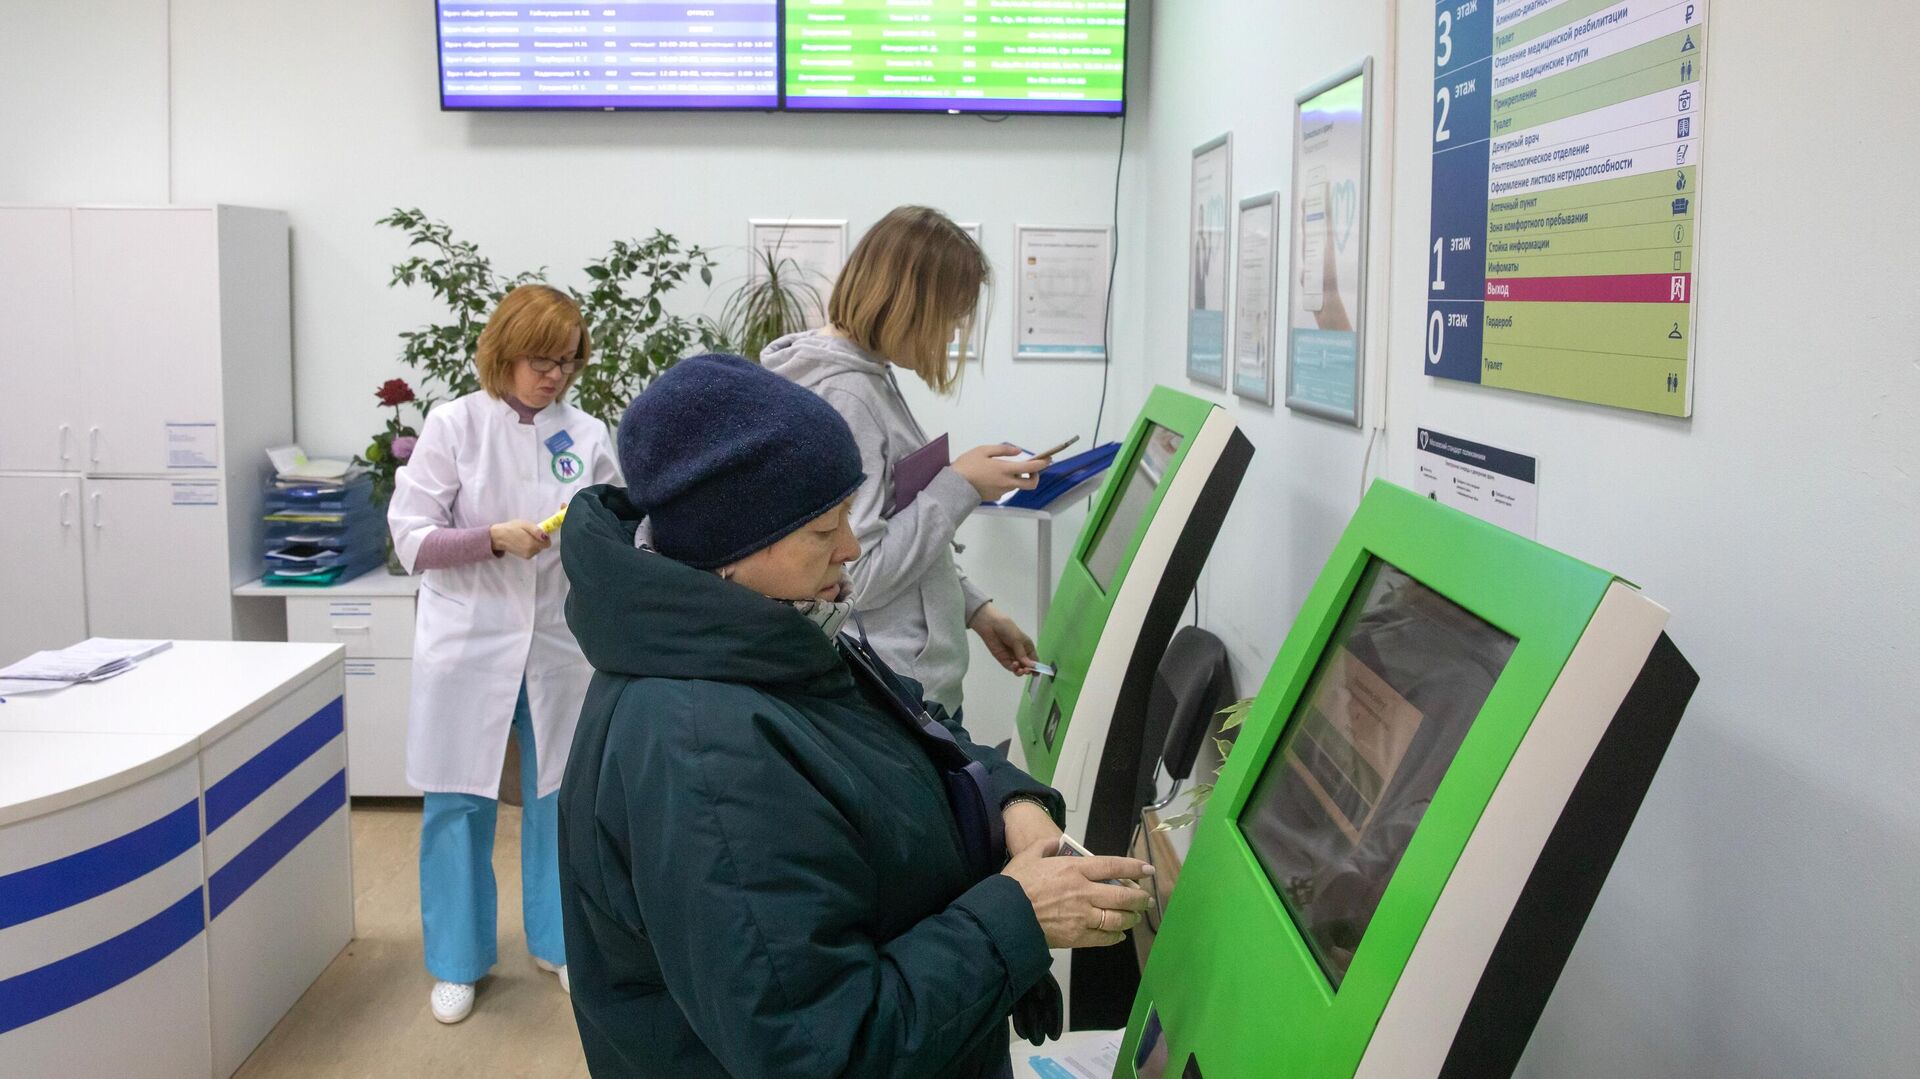  Пациенты записываются на прием к врачу через электронные терминалы в Москве   - РИА Новости, 1920, 25.03.2021